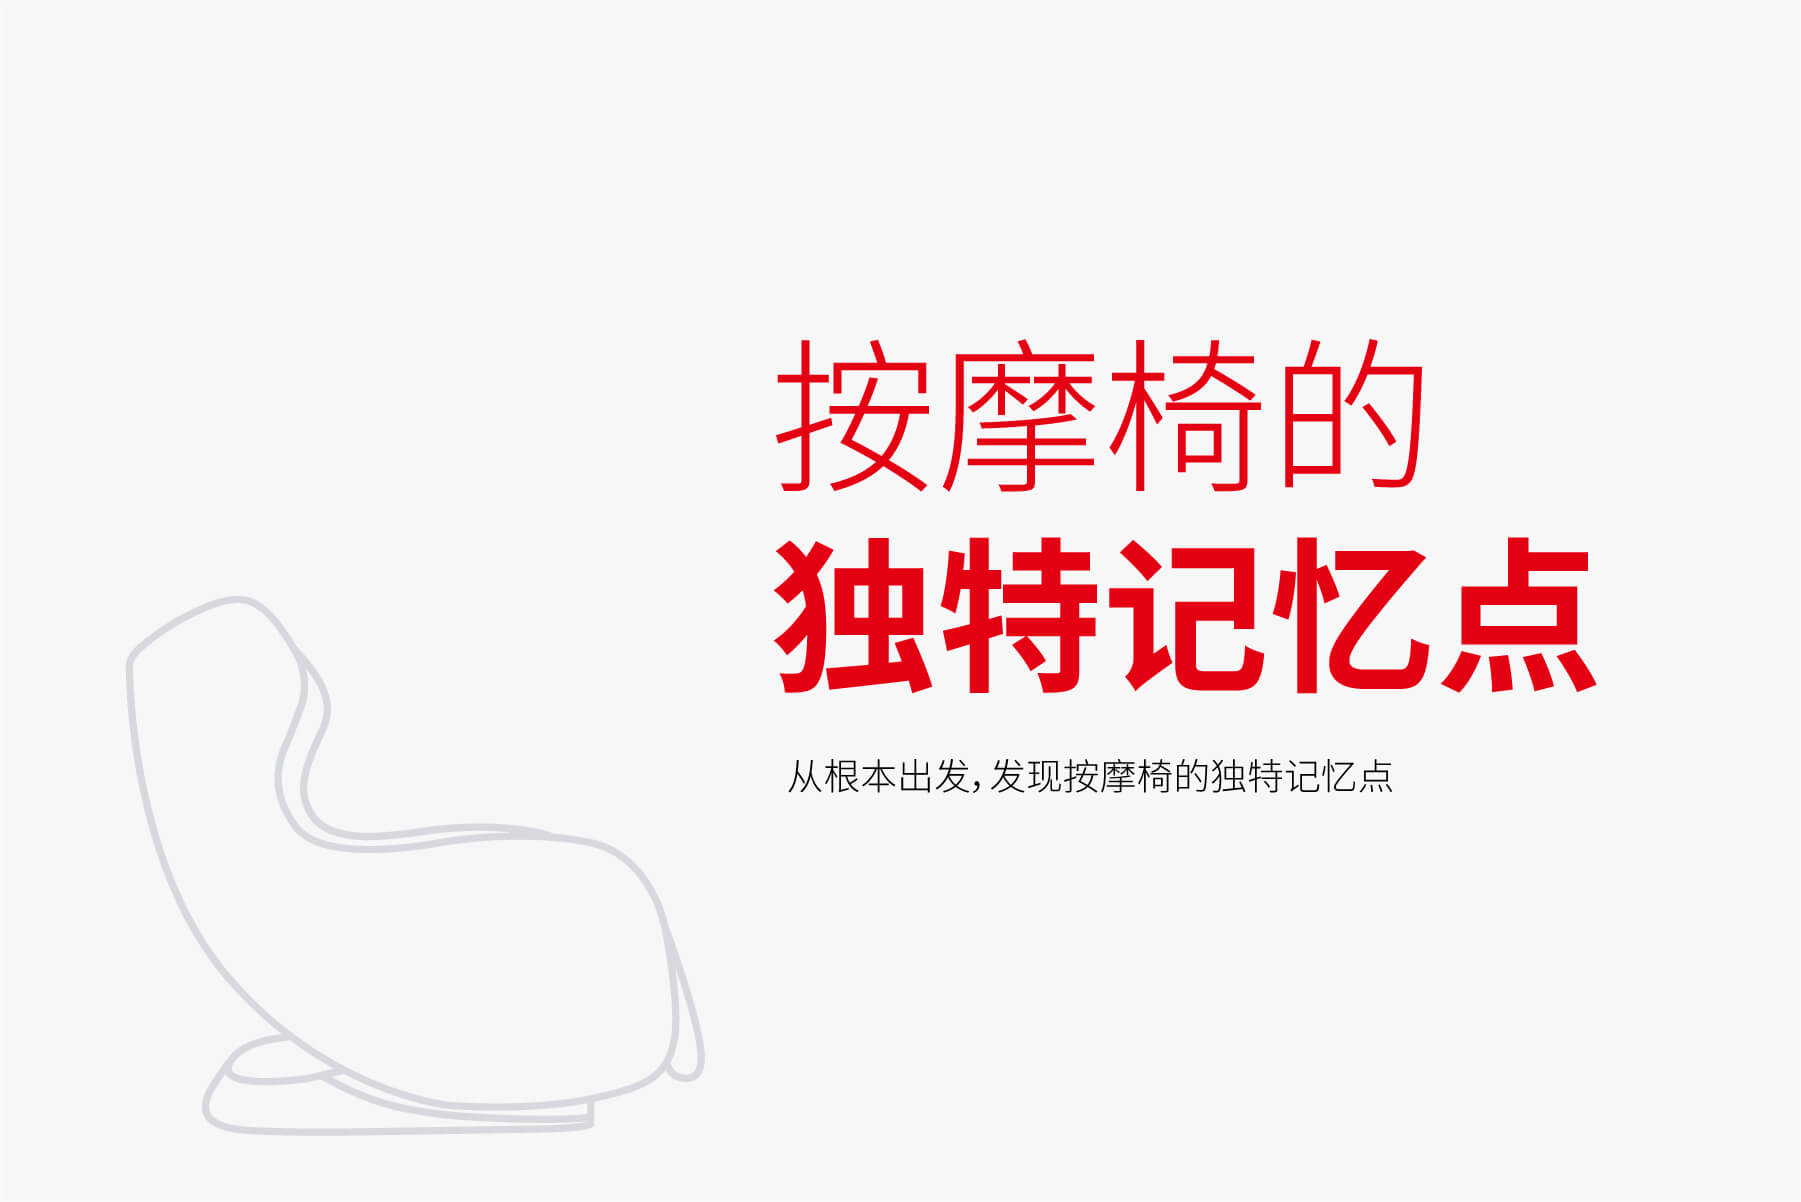 硕谷设计-上海vi设计-上海logo设计-品牌设计-标志设计-画册设计--logo设计-品牌策划-高端设计-硕谷品牌设计-上海金融logo设计-上海金融vi设计.jpg